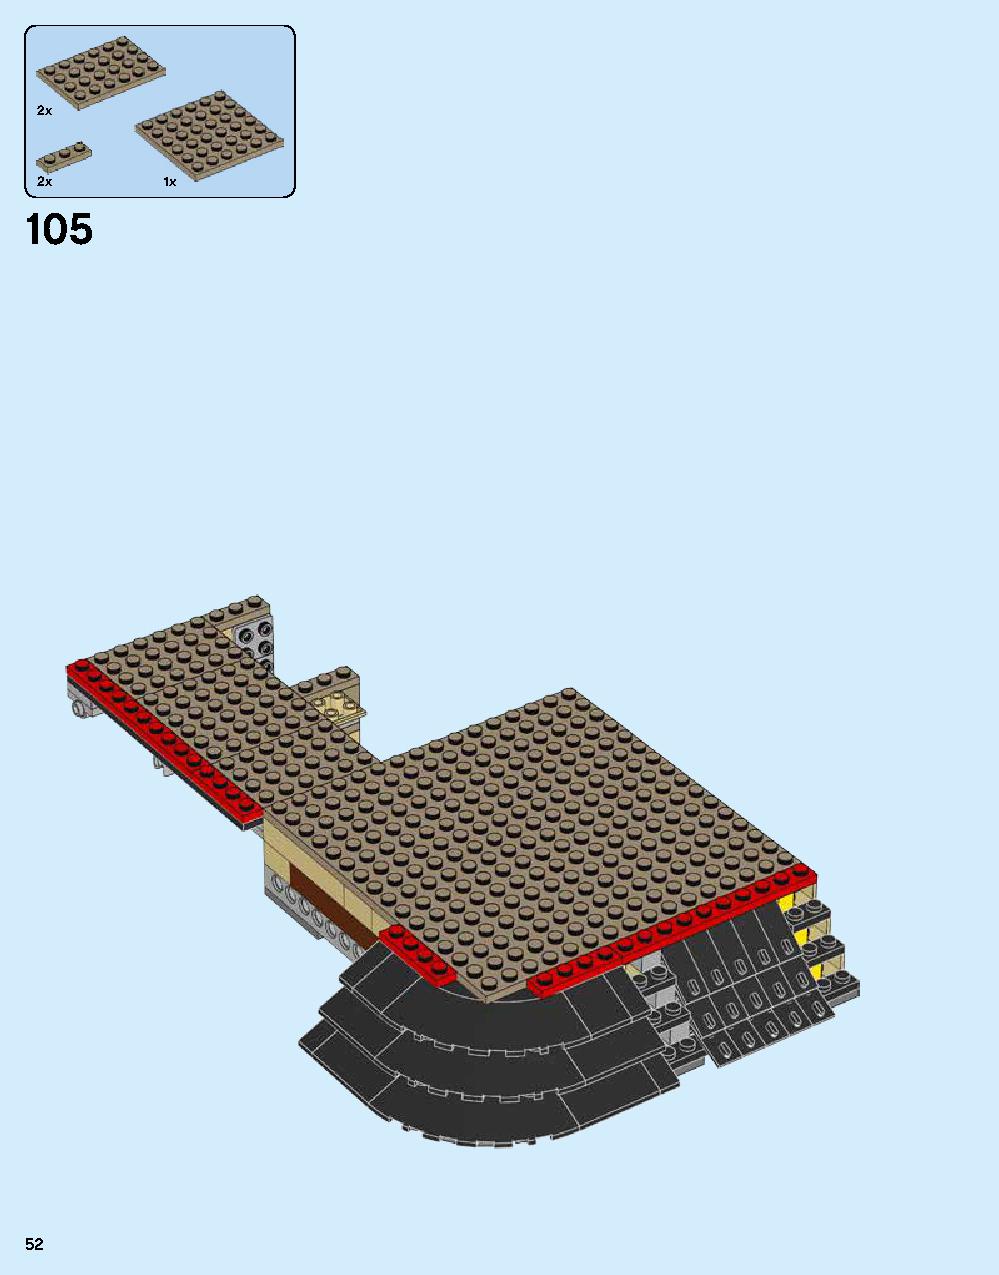 ニンジャゴー シティ 70620 レゴの商品情報 レゴの説明書・組立方法 52 page